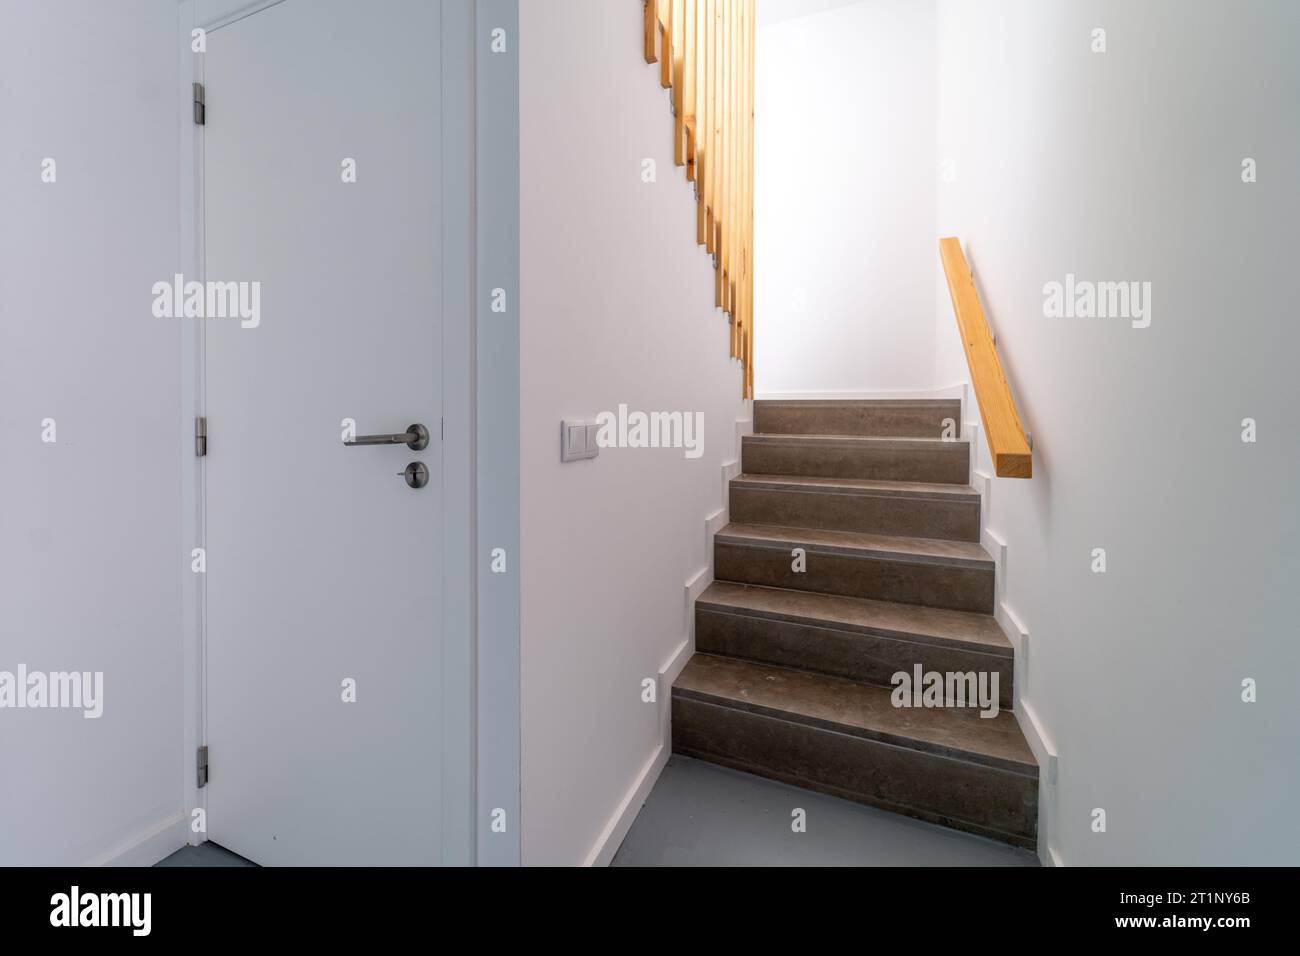 Moderne Innentreppe mit Staufach darunter. Treppenaufgang geht runter. Pfad einer Treppe oder Treppe innerhalb eines Hauses. Innenraumgestaltung im Innenbereich Stockfoto